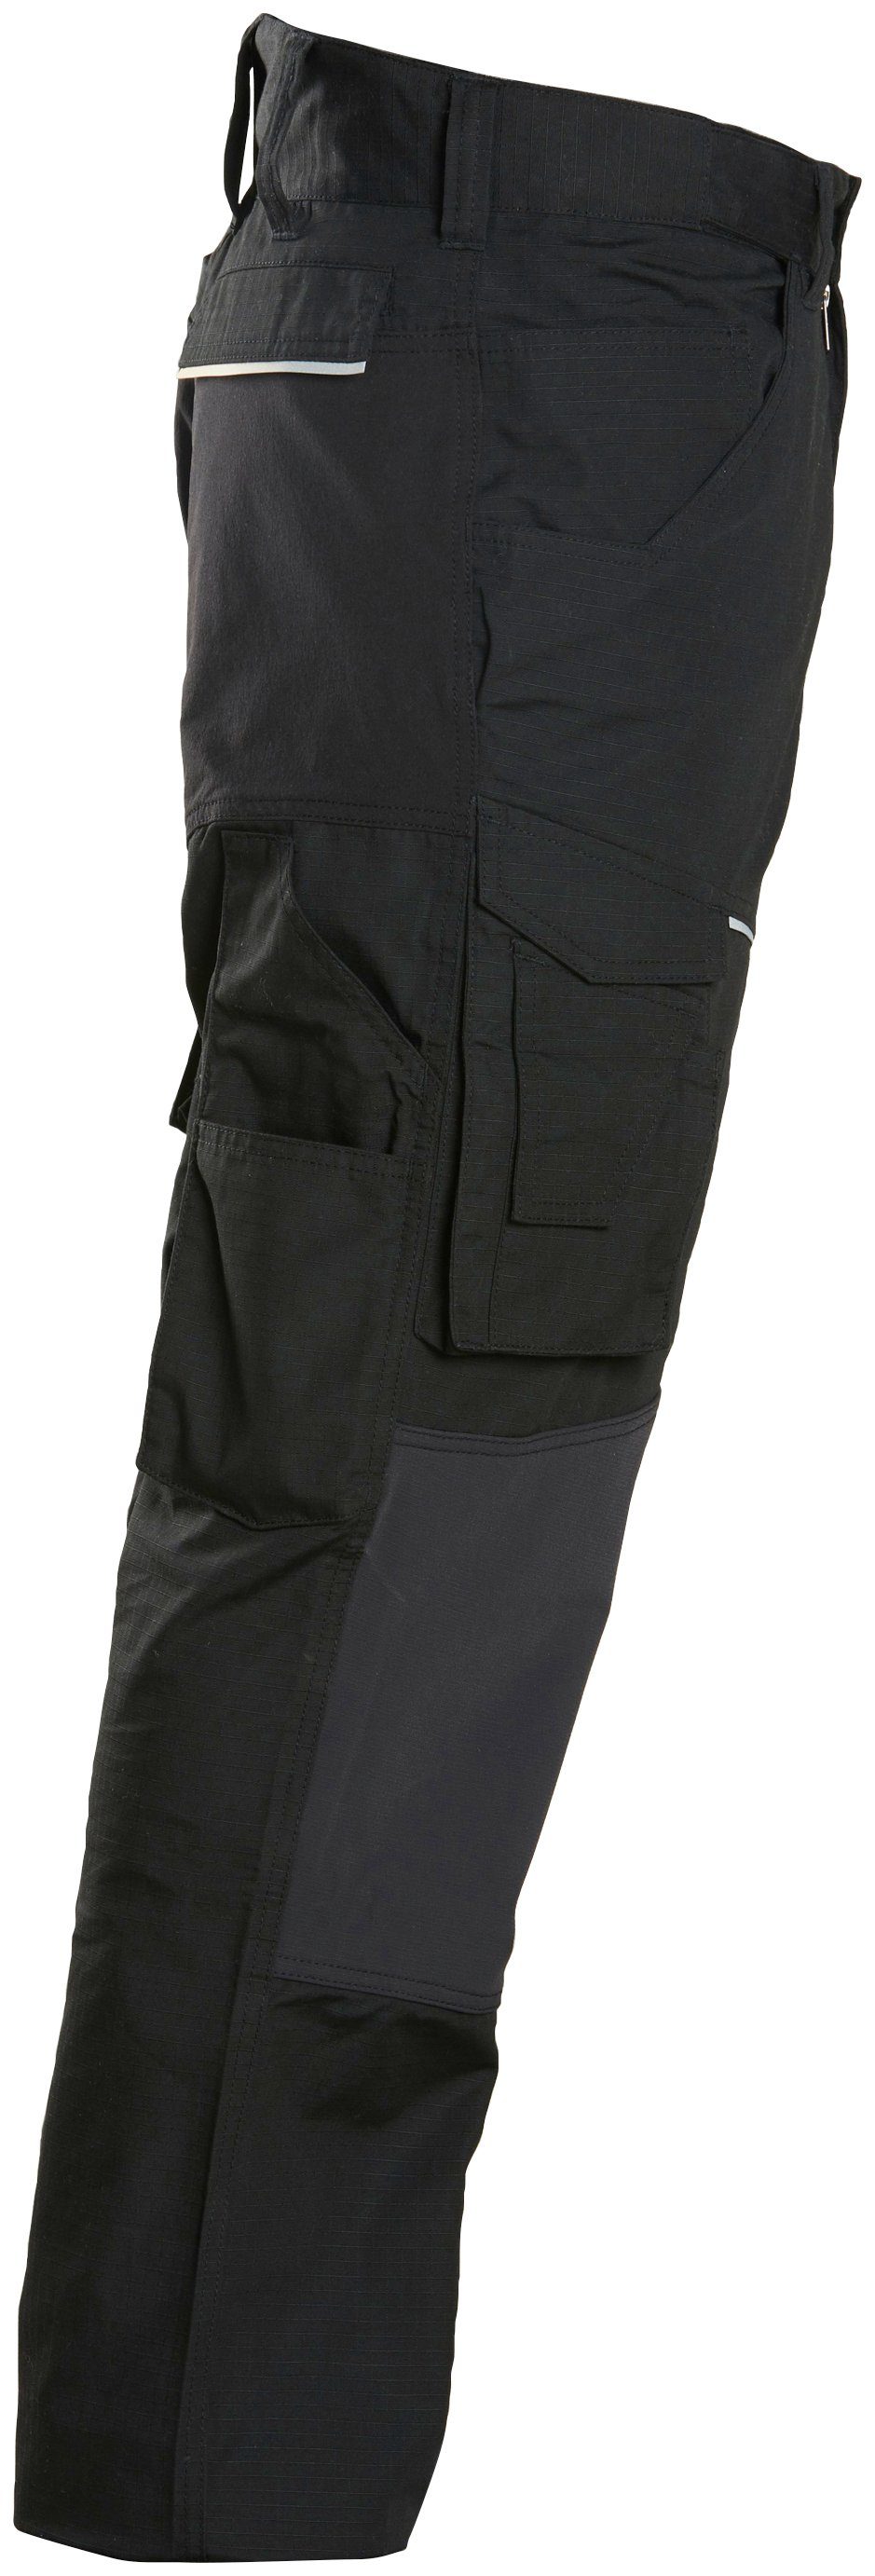 (9 Northern bequem, Beinverlängerung, Country praktischen und mit Cordura®Knieverstärkung Stretcheinsätzen langlebiges Material) elastischen Arbeitshose Taschen, einfache